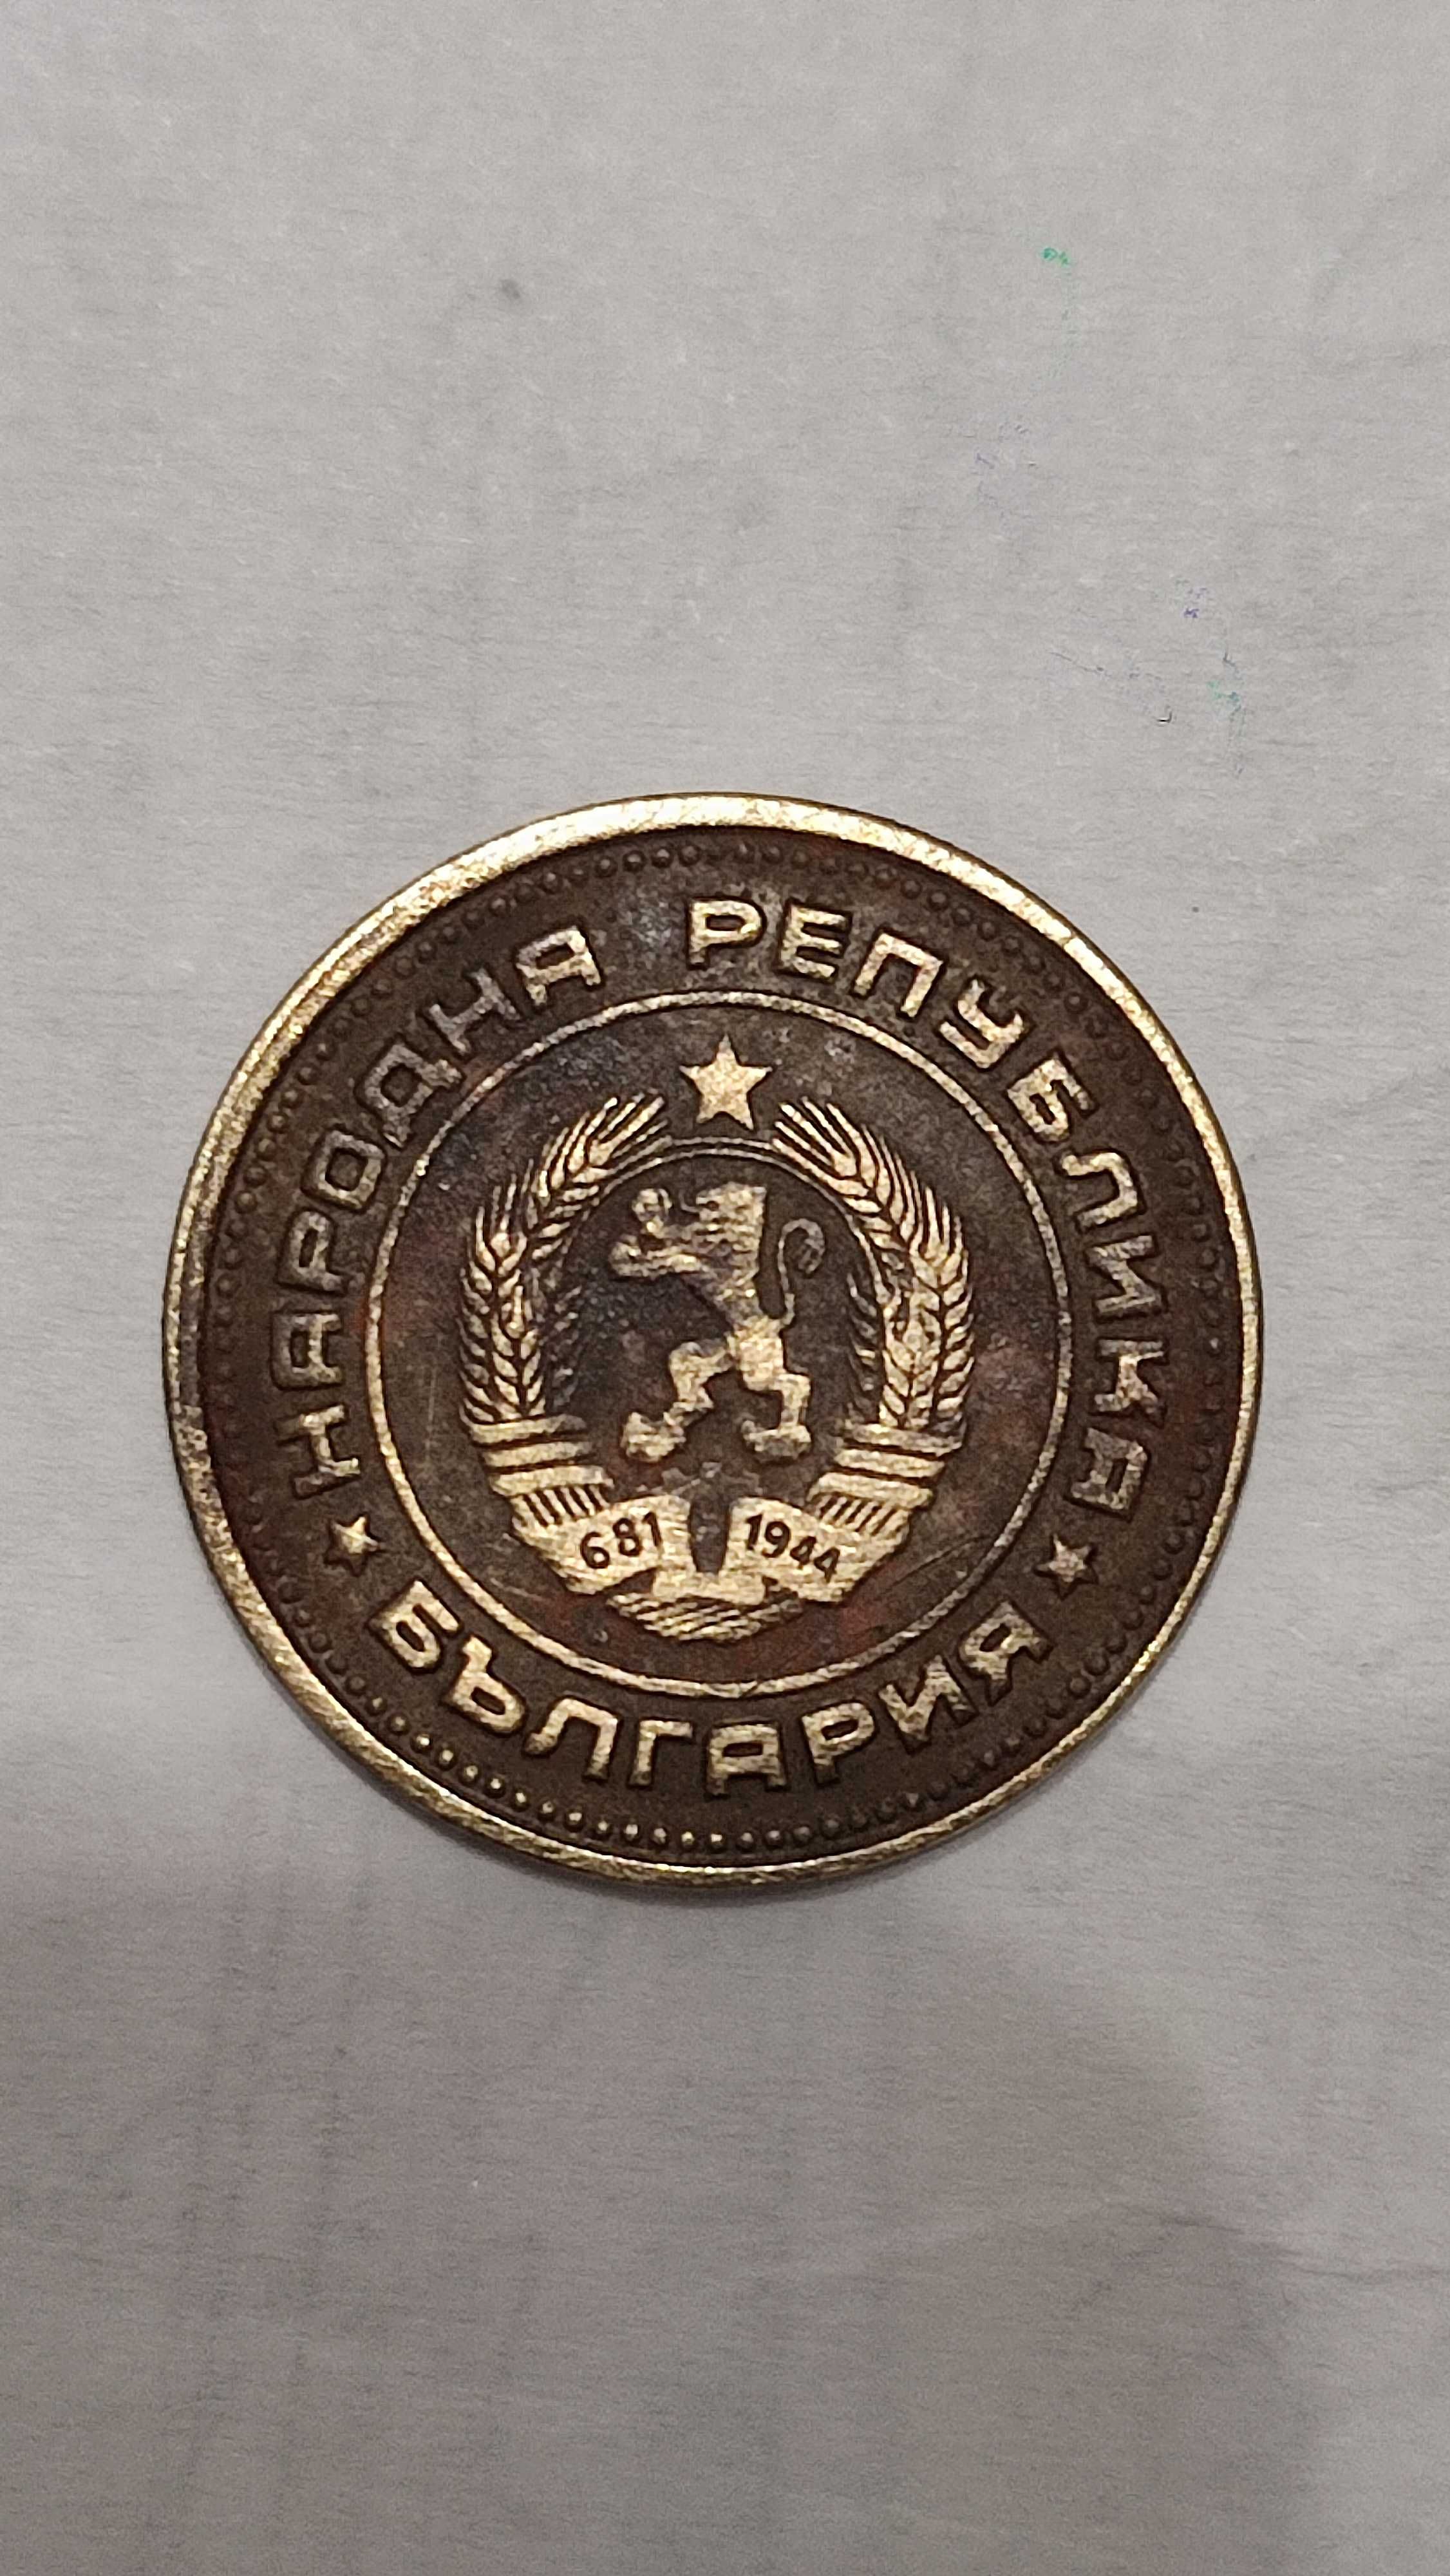 Добре запазена монета от 1974 година.